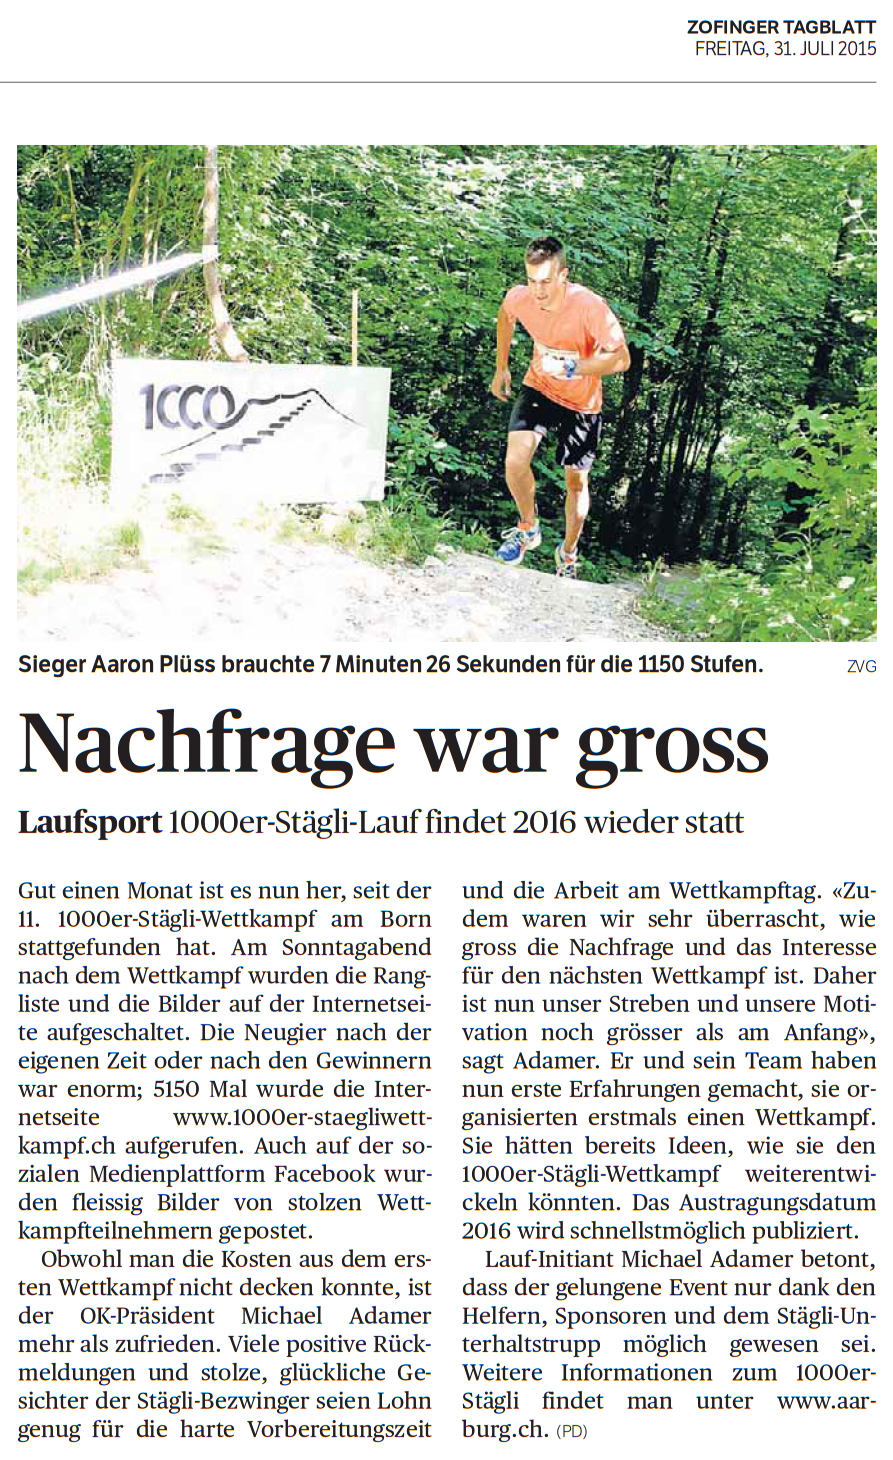 2015.07.29 Zofinger Tagblatt_Ausschnitt